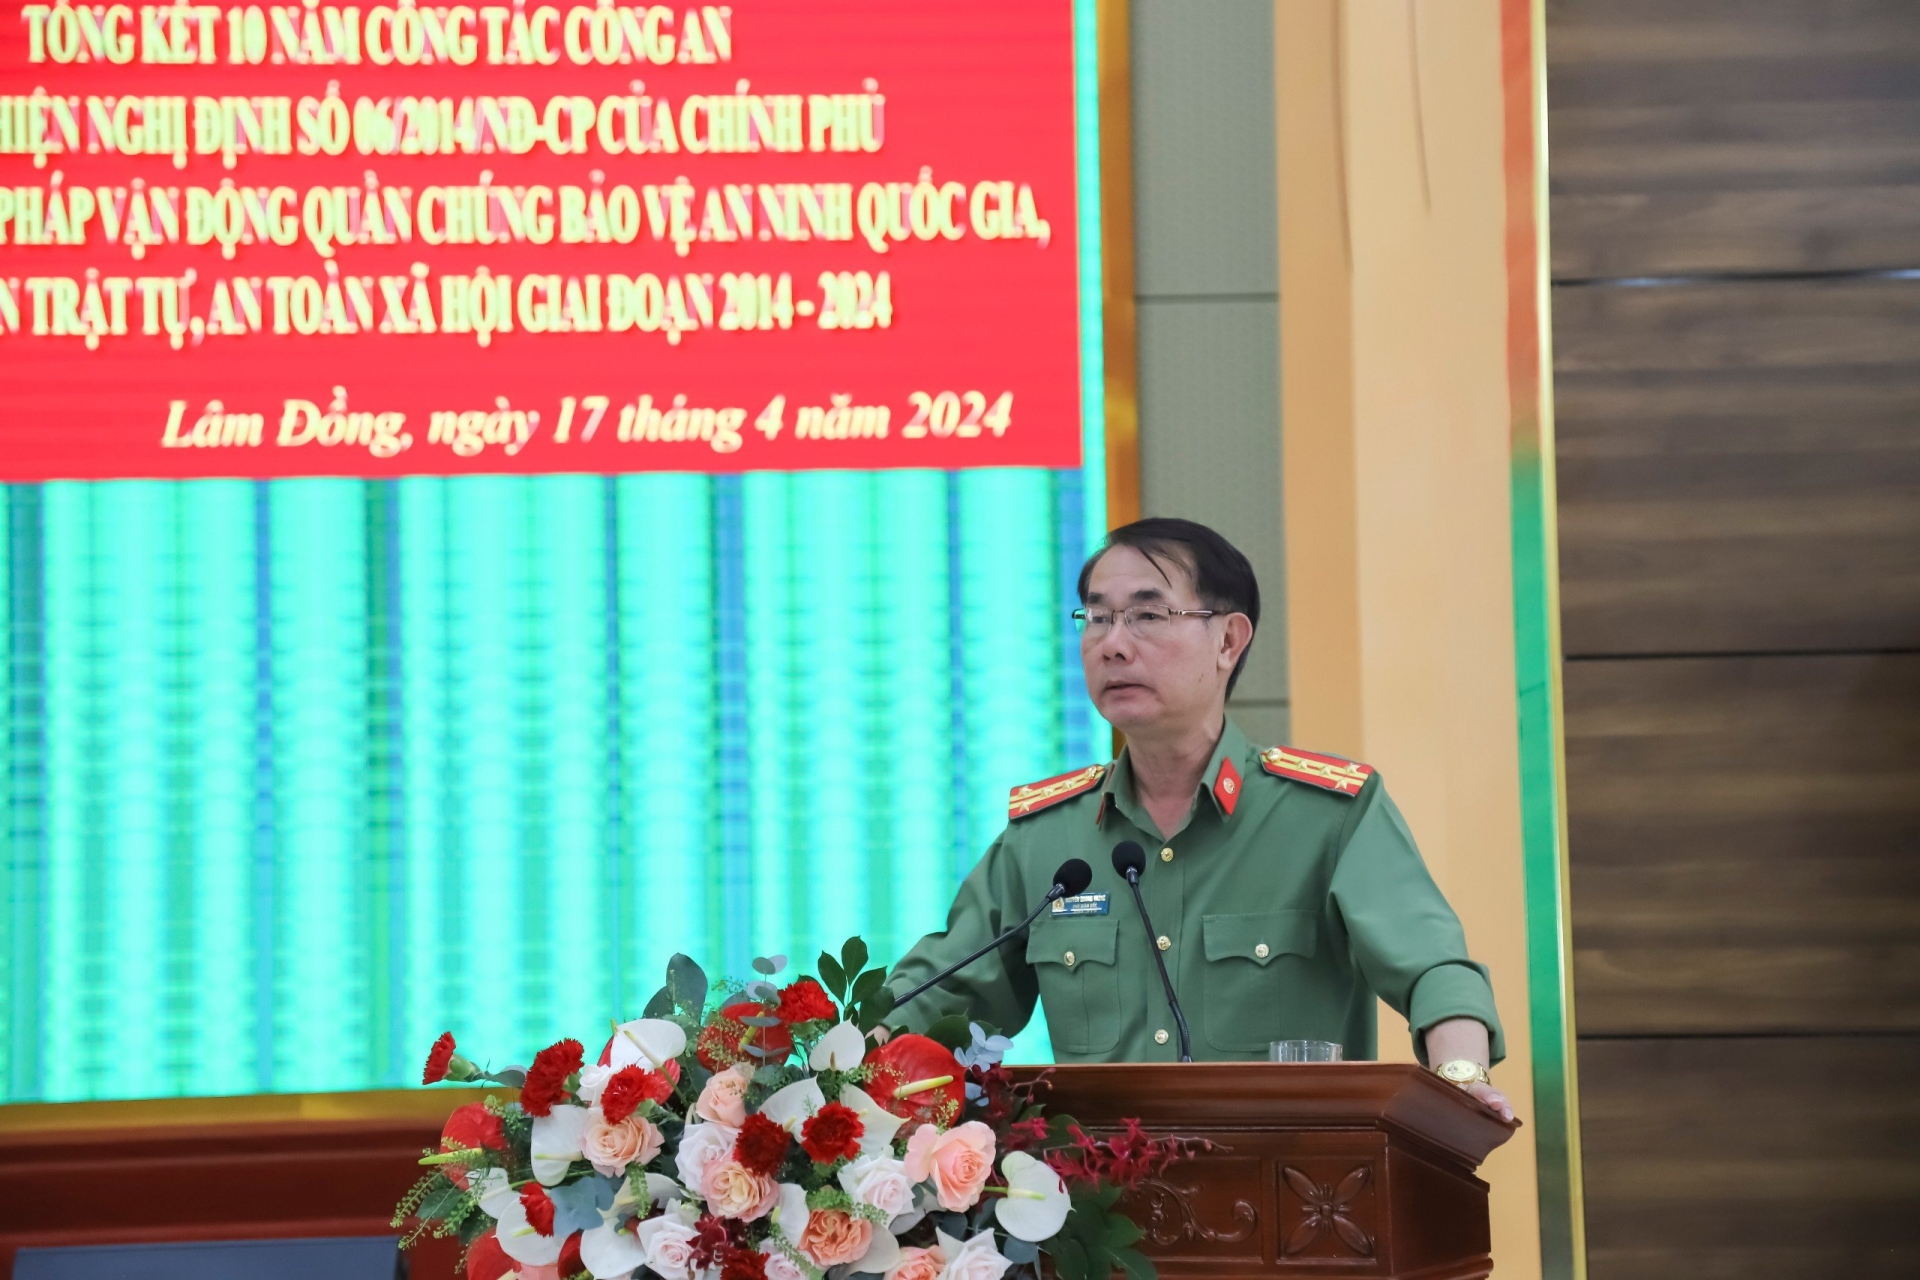 Đại tá Nguyễn Quang Thống - Phó Giám đốc Công an tỉnh hướng dẫn thảo luận tại hội nghị